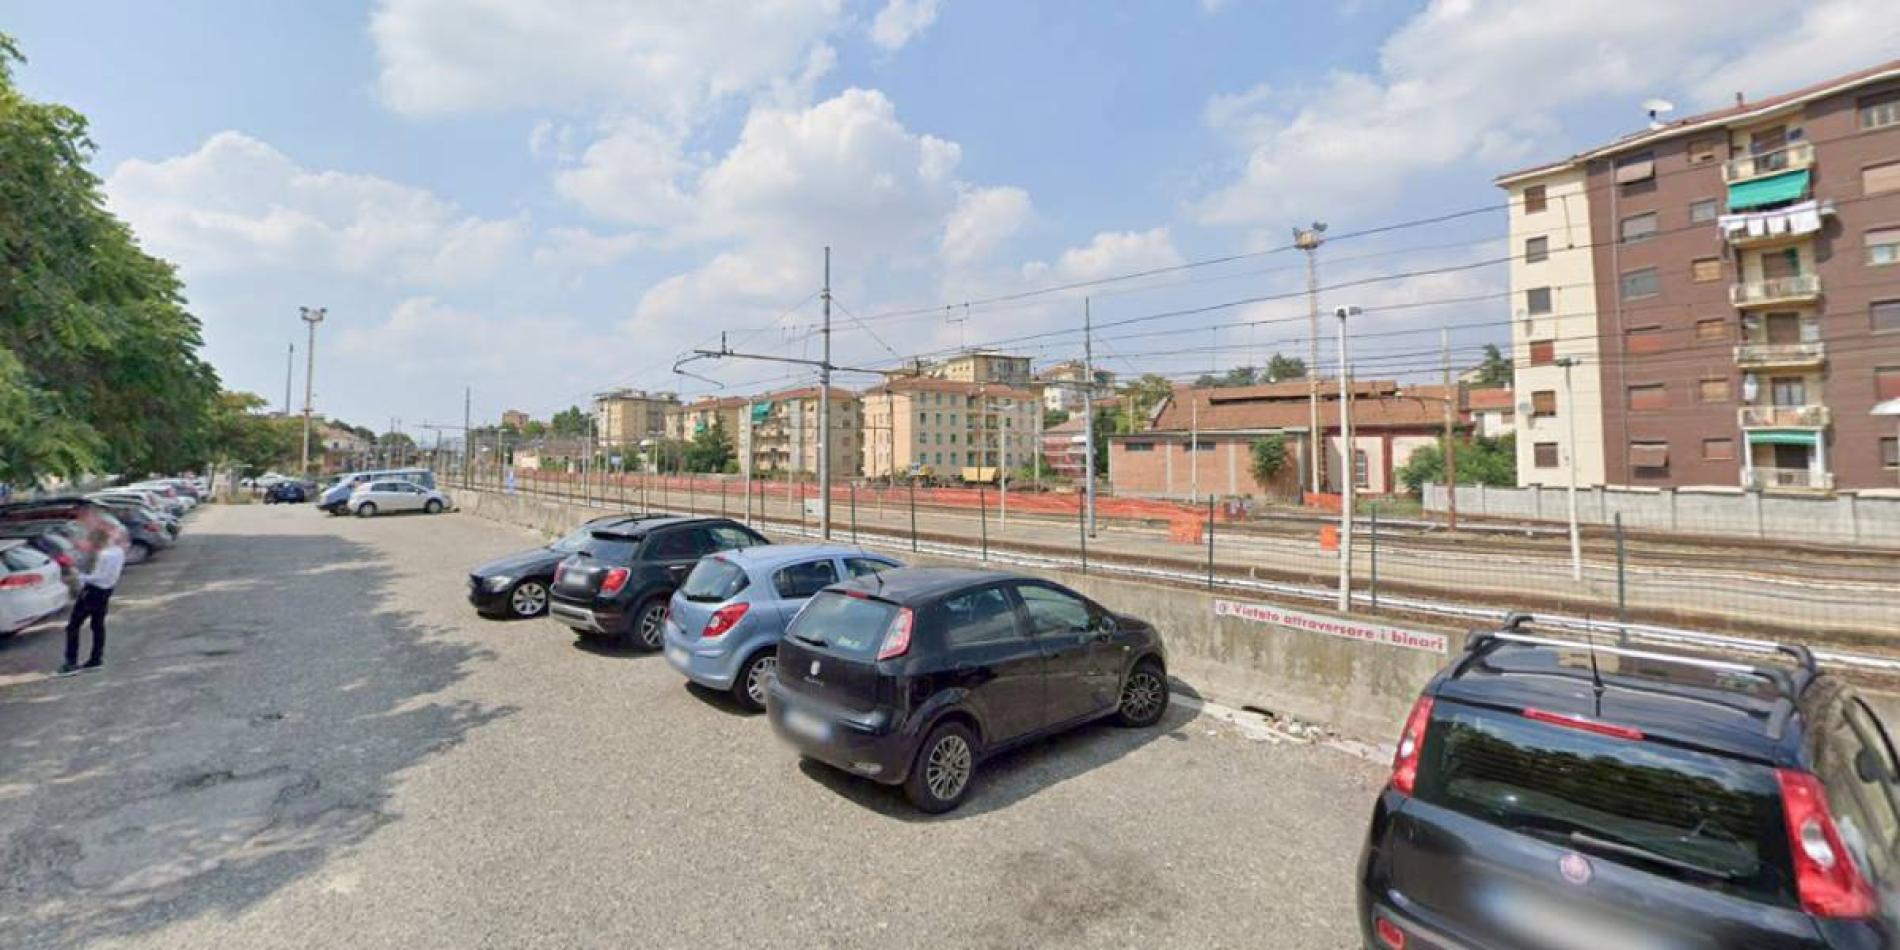 Corso Marenco, convenzione Comune-Ferrovie per il parcheggio